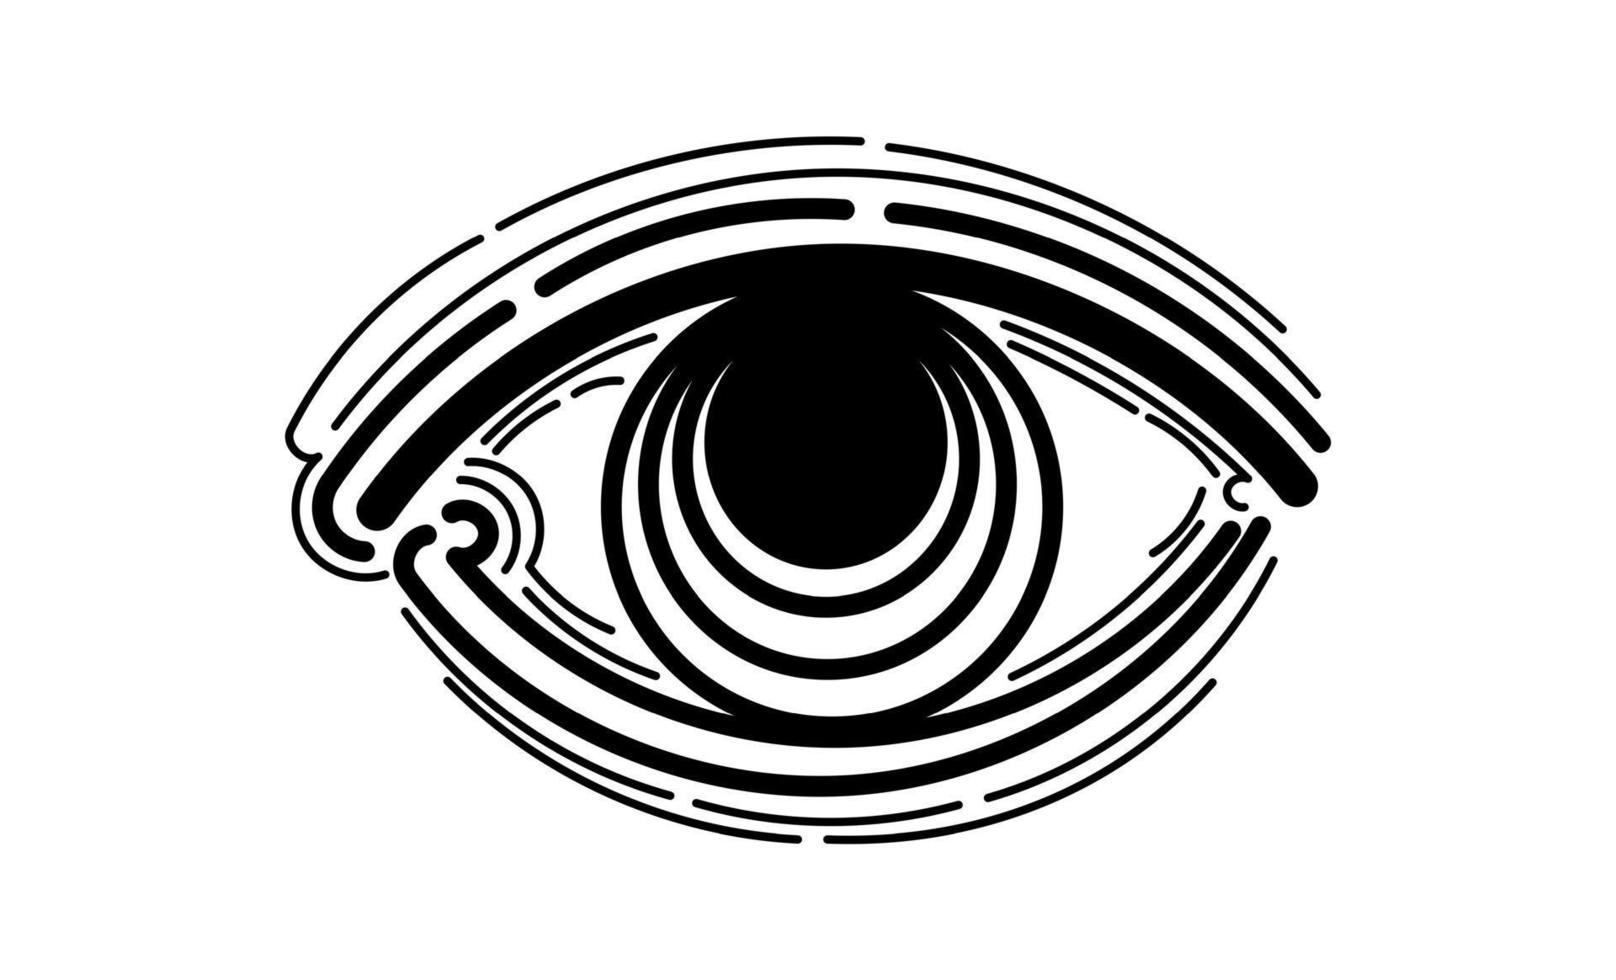 ilustração vetorial do olho humano em estilo gravado vetor